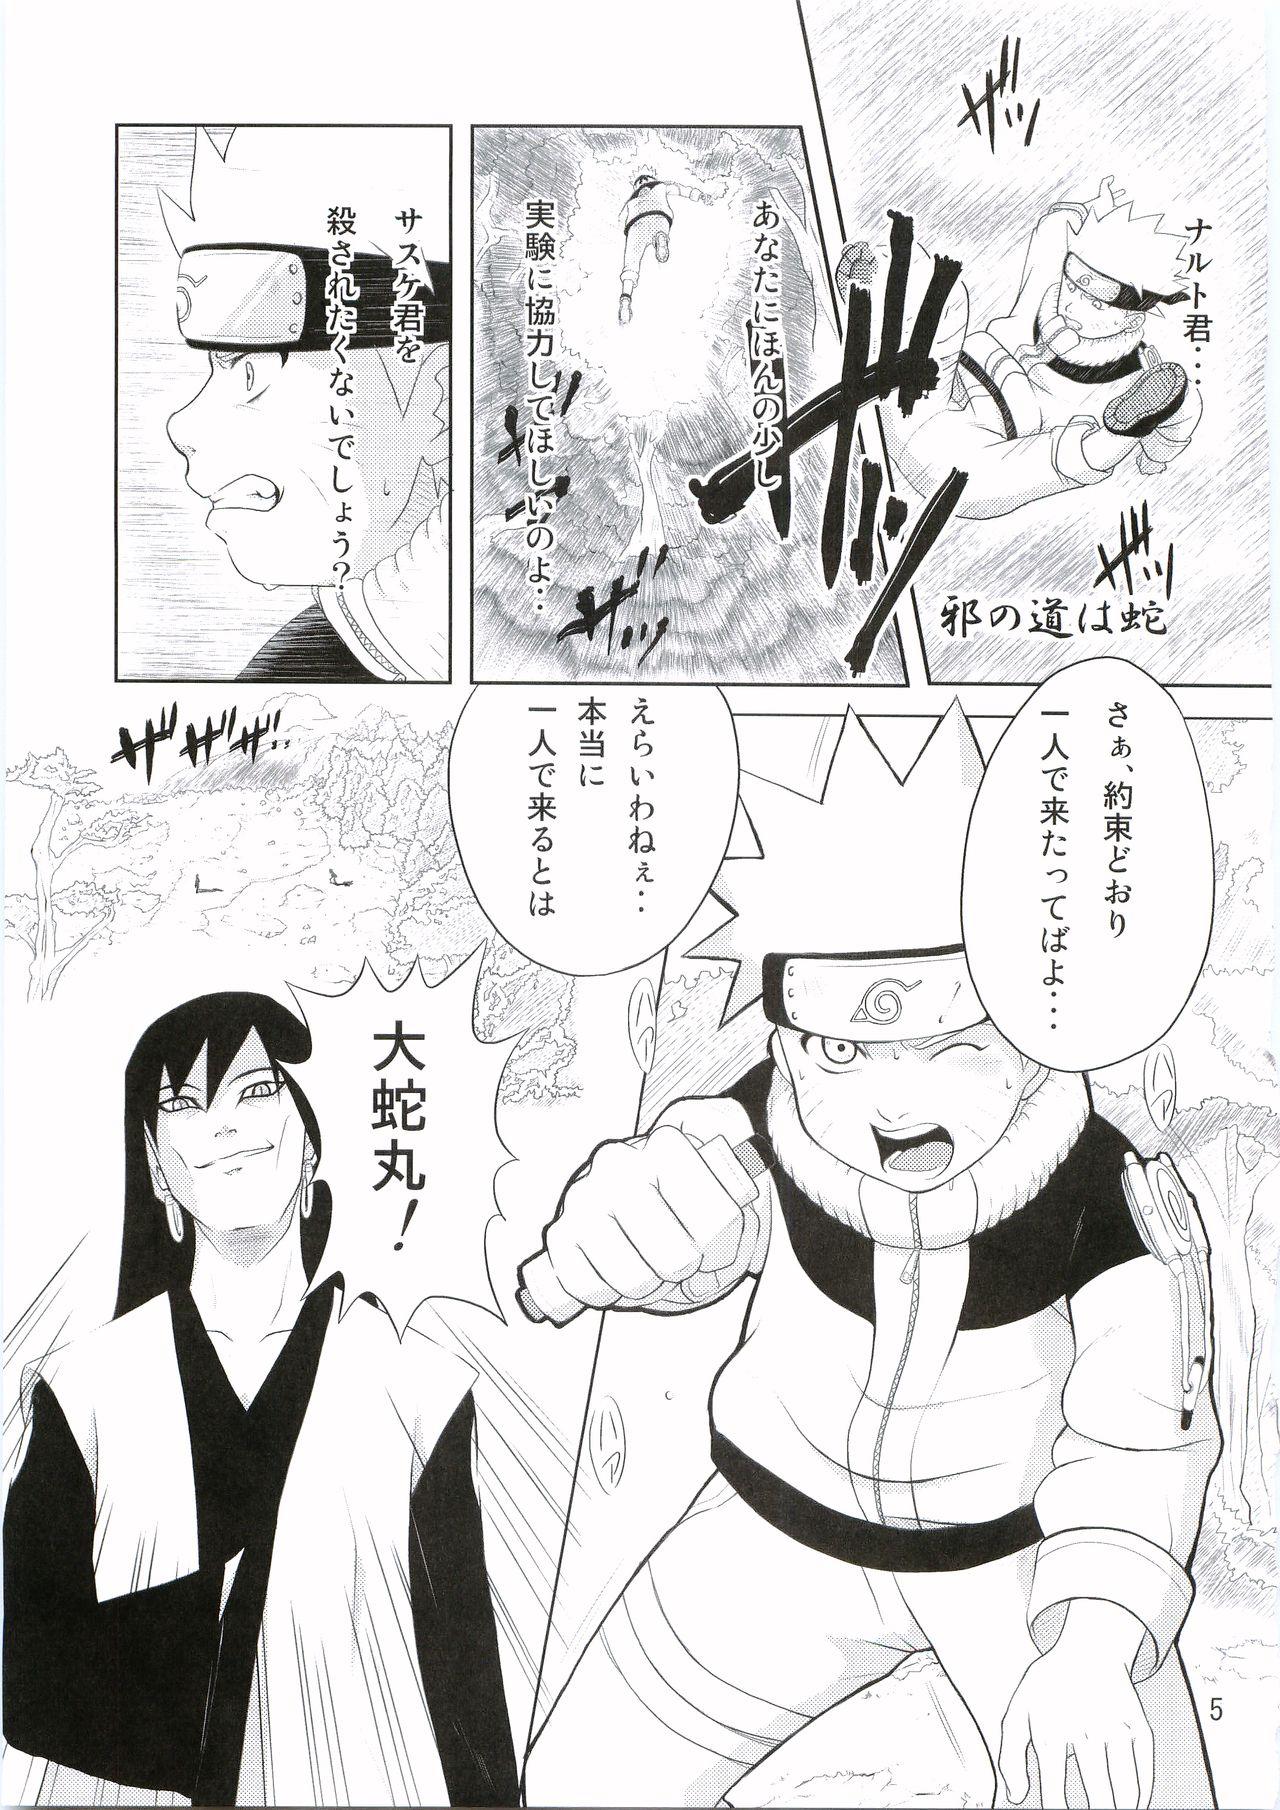 Spreading Shinobi no Kokoroe - Naruto Erotica - Page 6